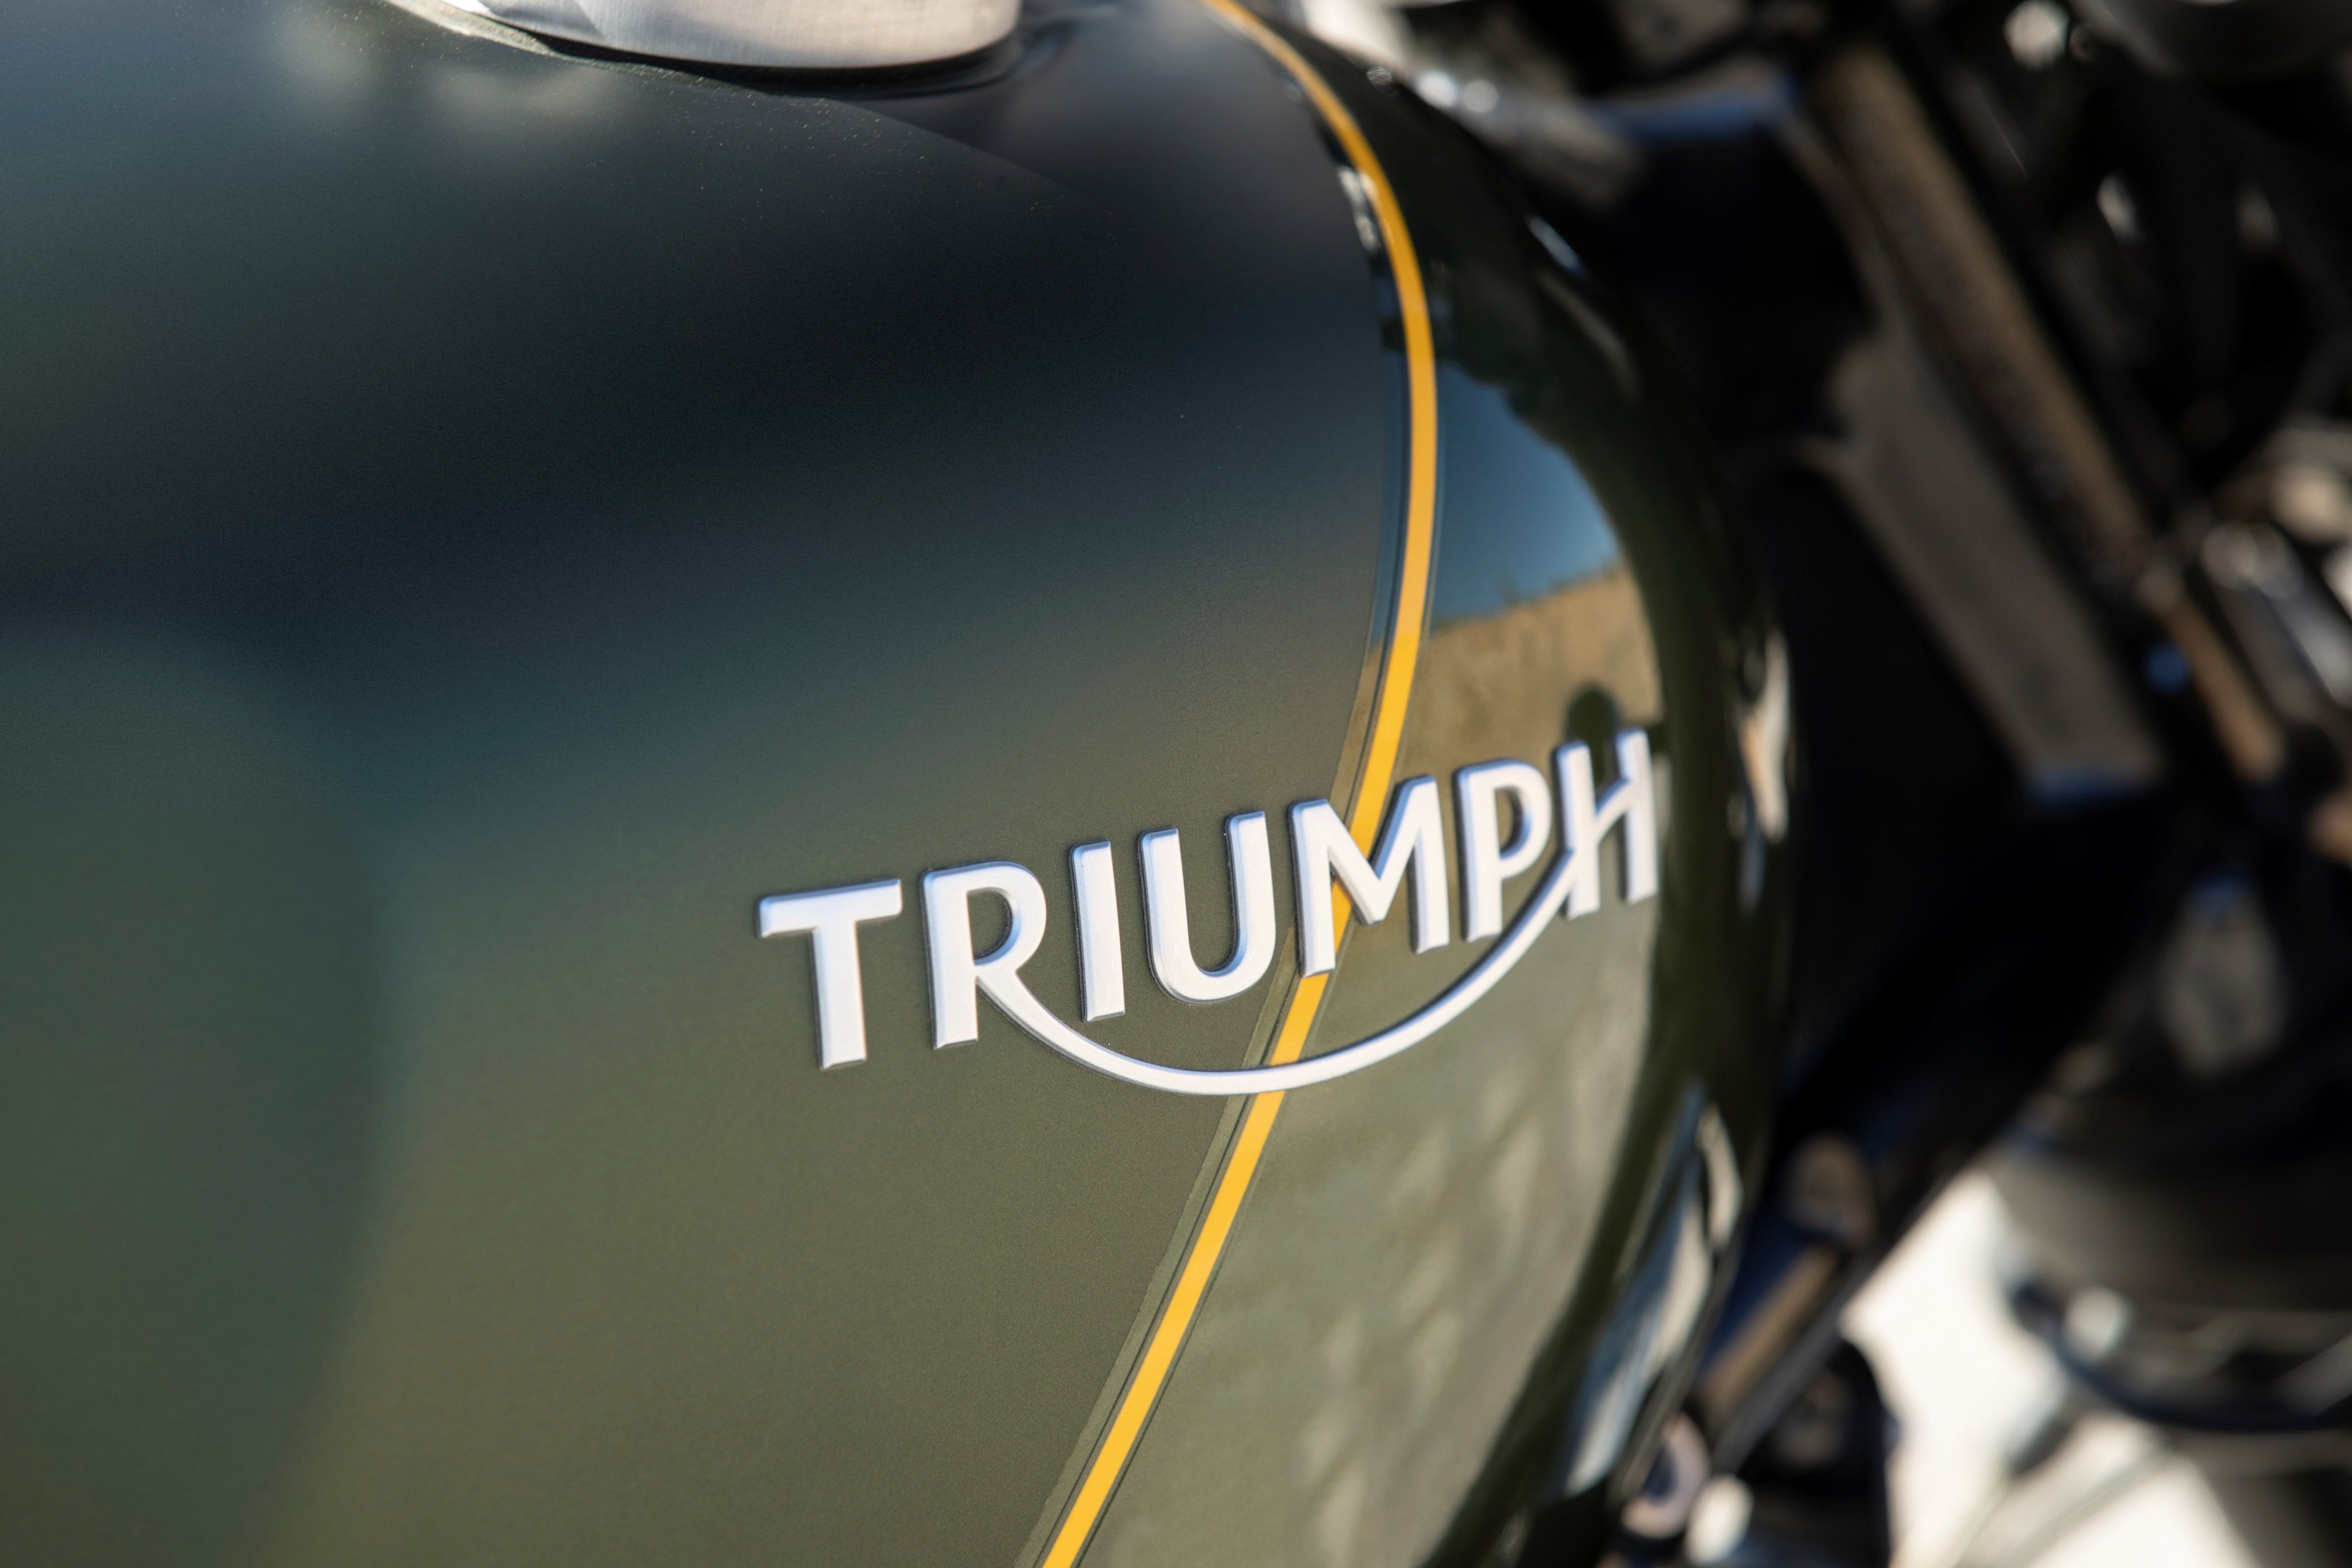 2019 - 2020 Triumph Scrambler 1200 XC